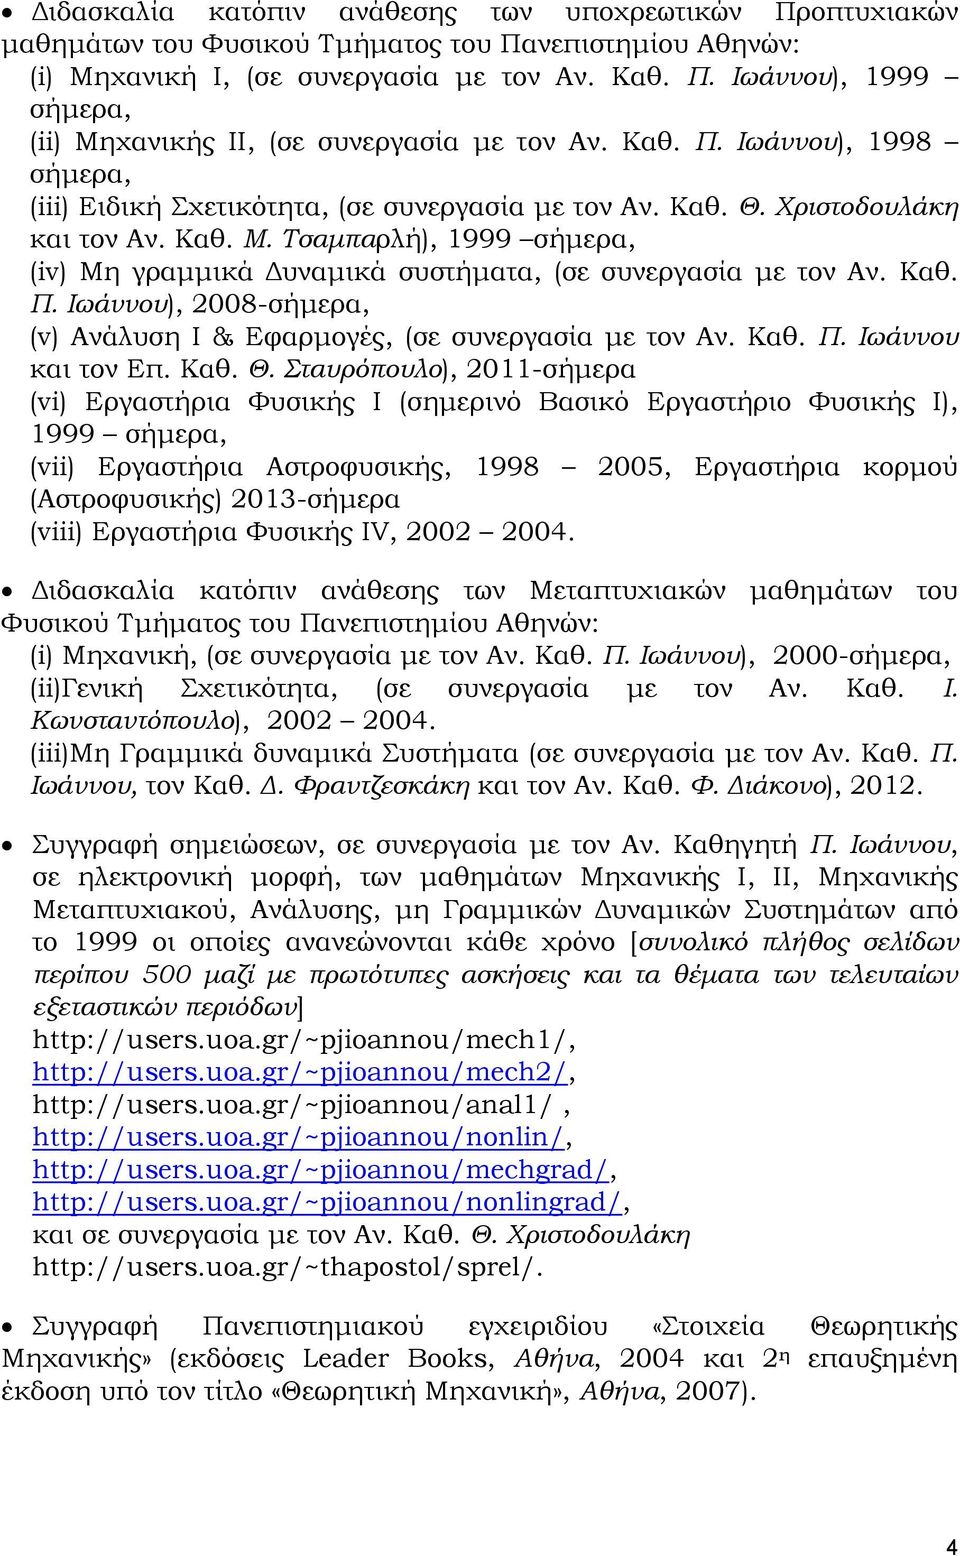 Τσαμπαρλή), 1999 σήμερα, (iv) Μη γραμμικά Δυναμικά συστήματα, (σε συνεργασία με τον Αν. Καθ. Π. Ιωάννου), 2008-σήμερα, (v) Ανάλυση Ι & Εφαρμογές, (σε συνεργασία με τον Αν. Καθ. Π. Ιωάννου και τον Επ.